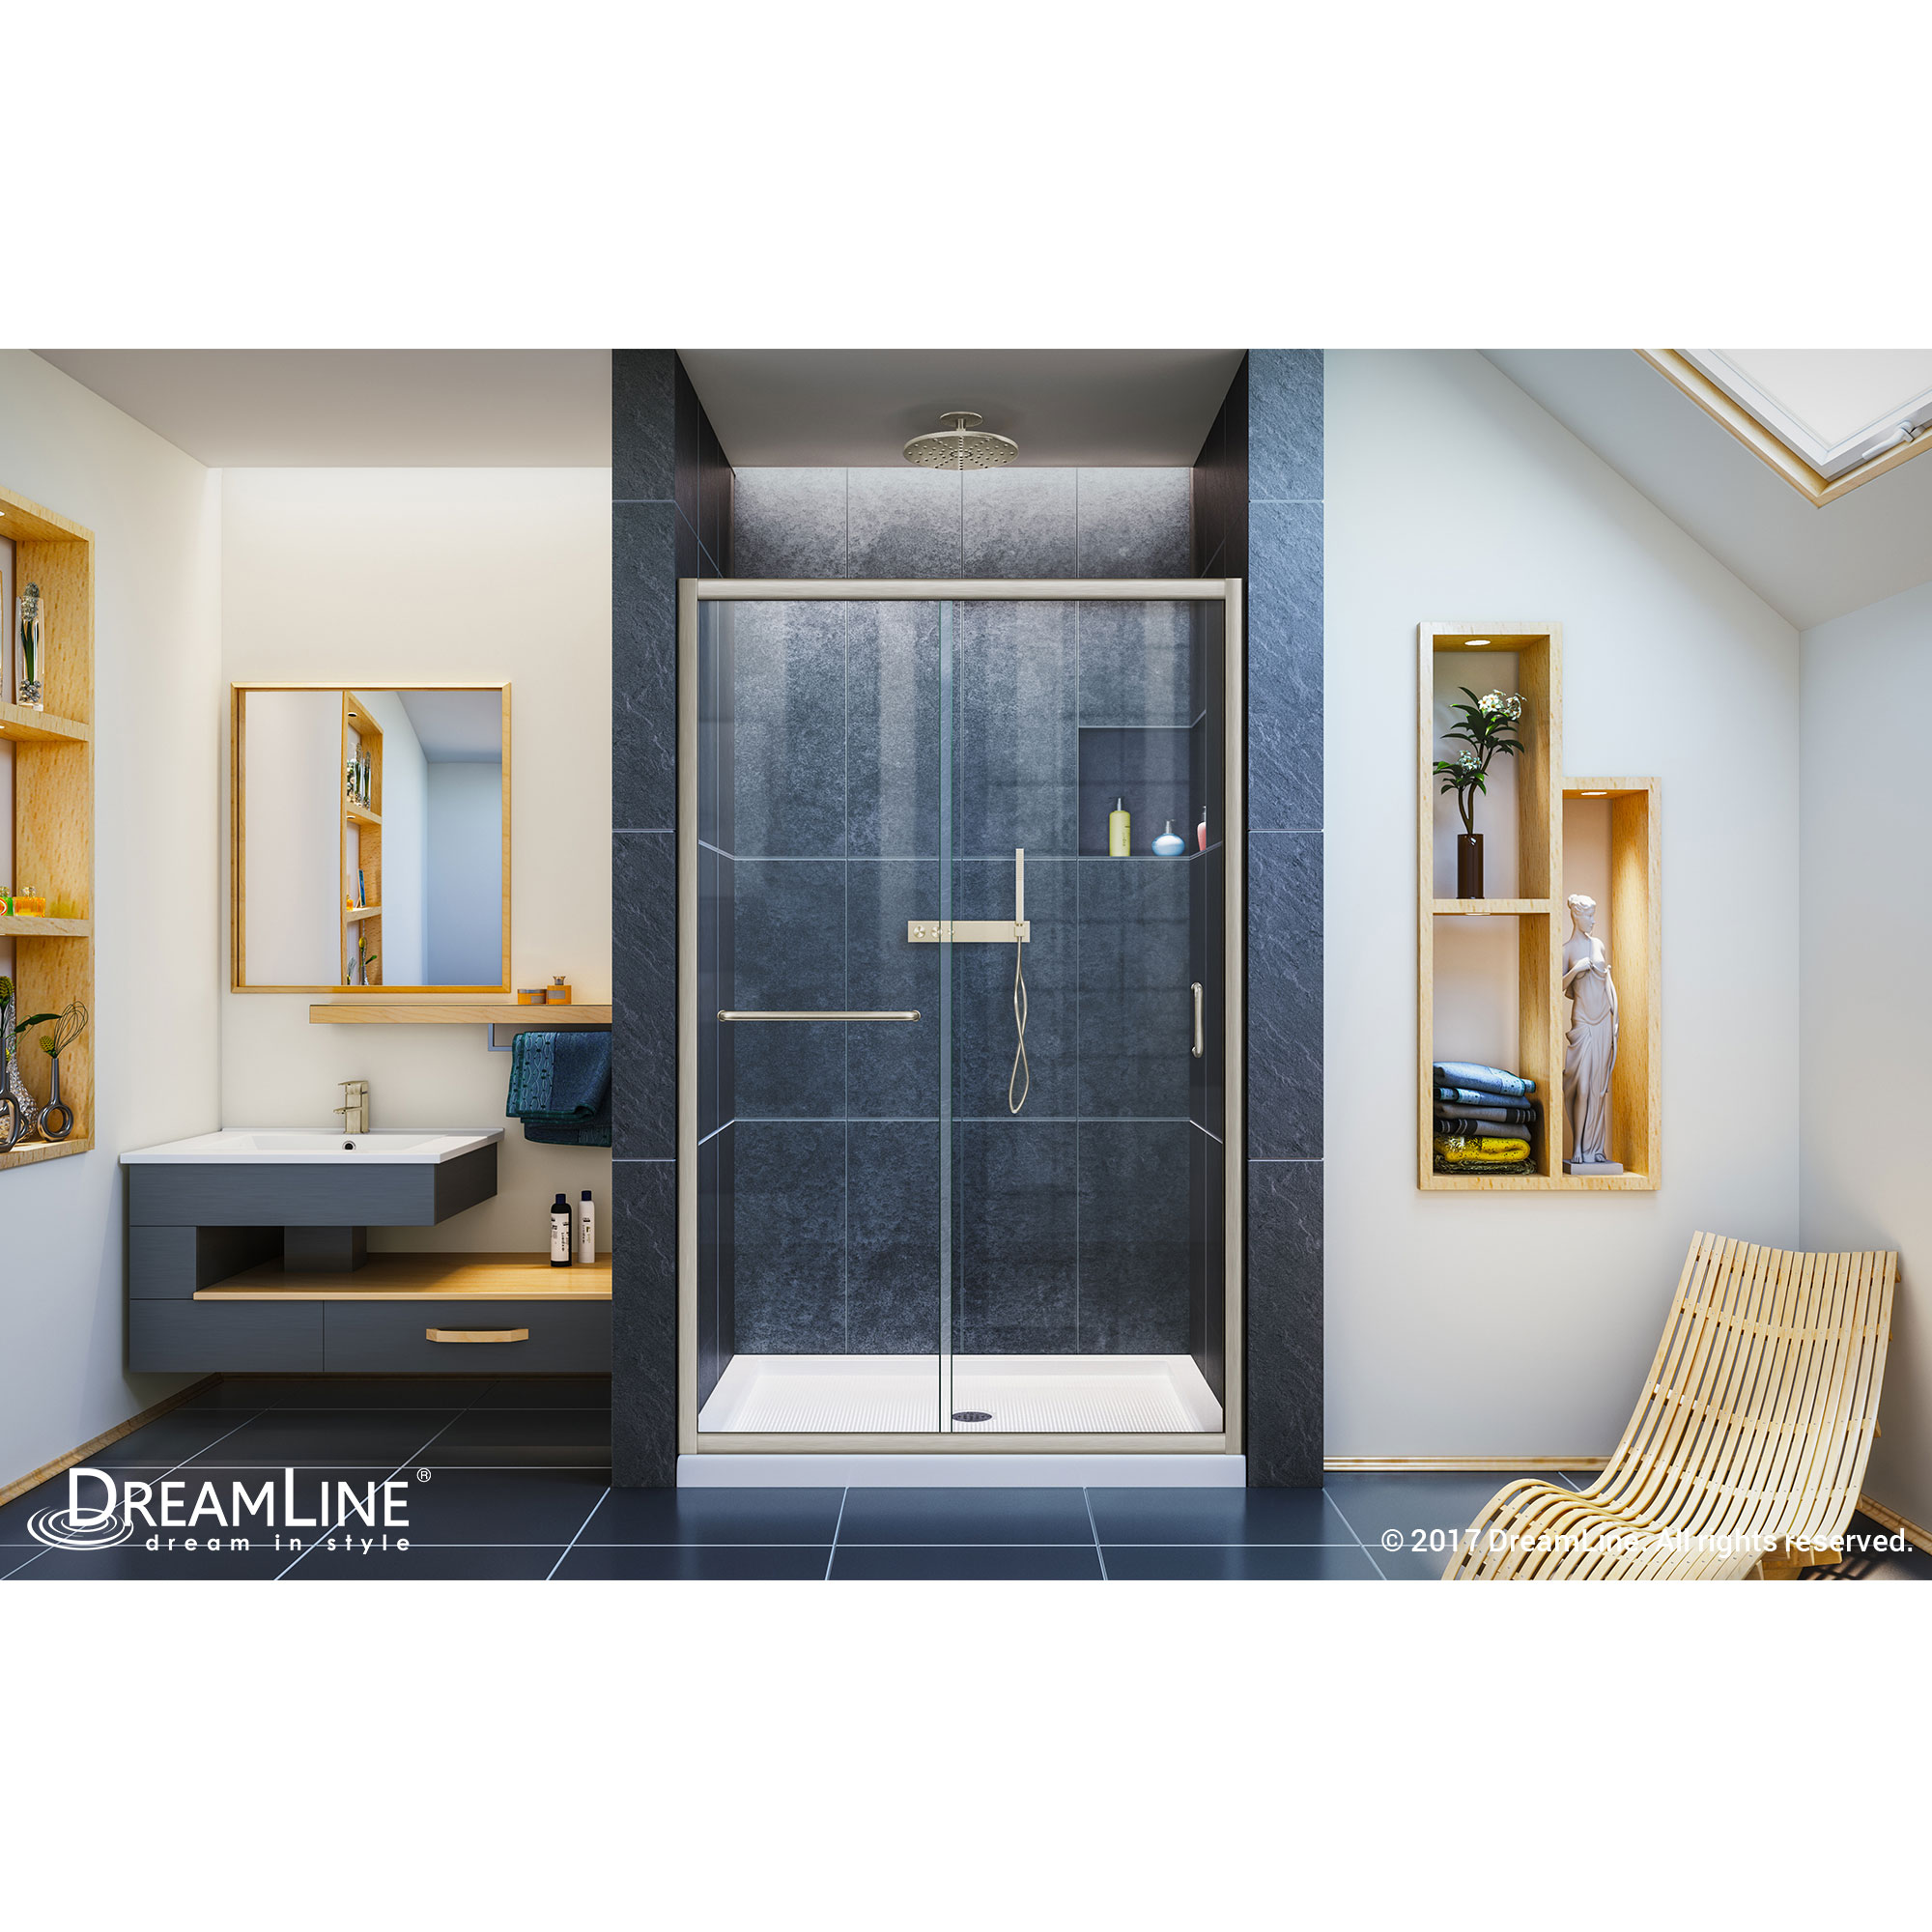 Infinity-Z 44 to 48" Frameless Sliding Shower Door, Clear 1/4" Glass Door, Brushed Nickel